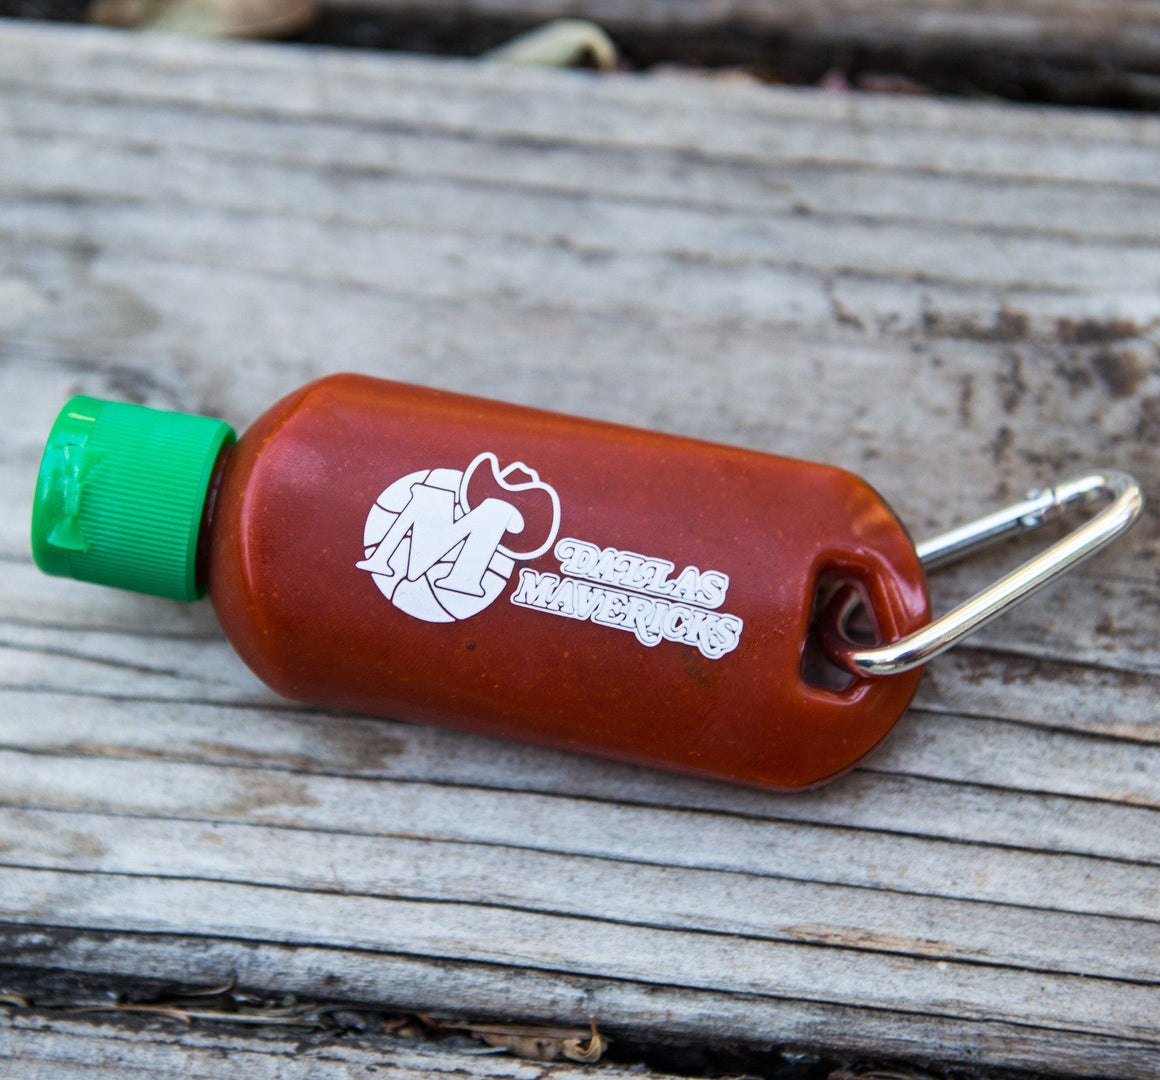 Sriracha2Go - Custom Sriracha2Go